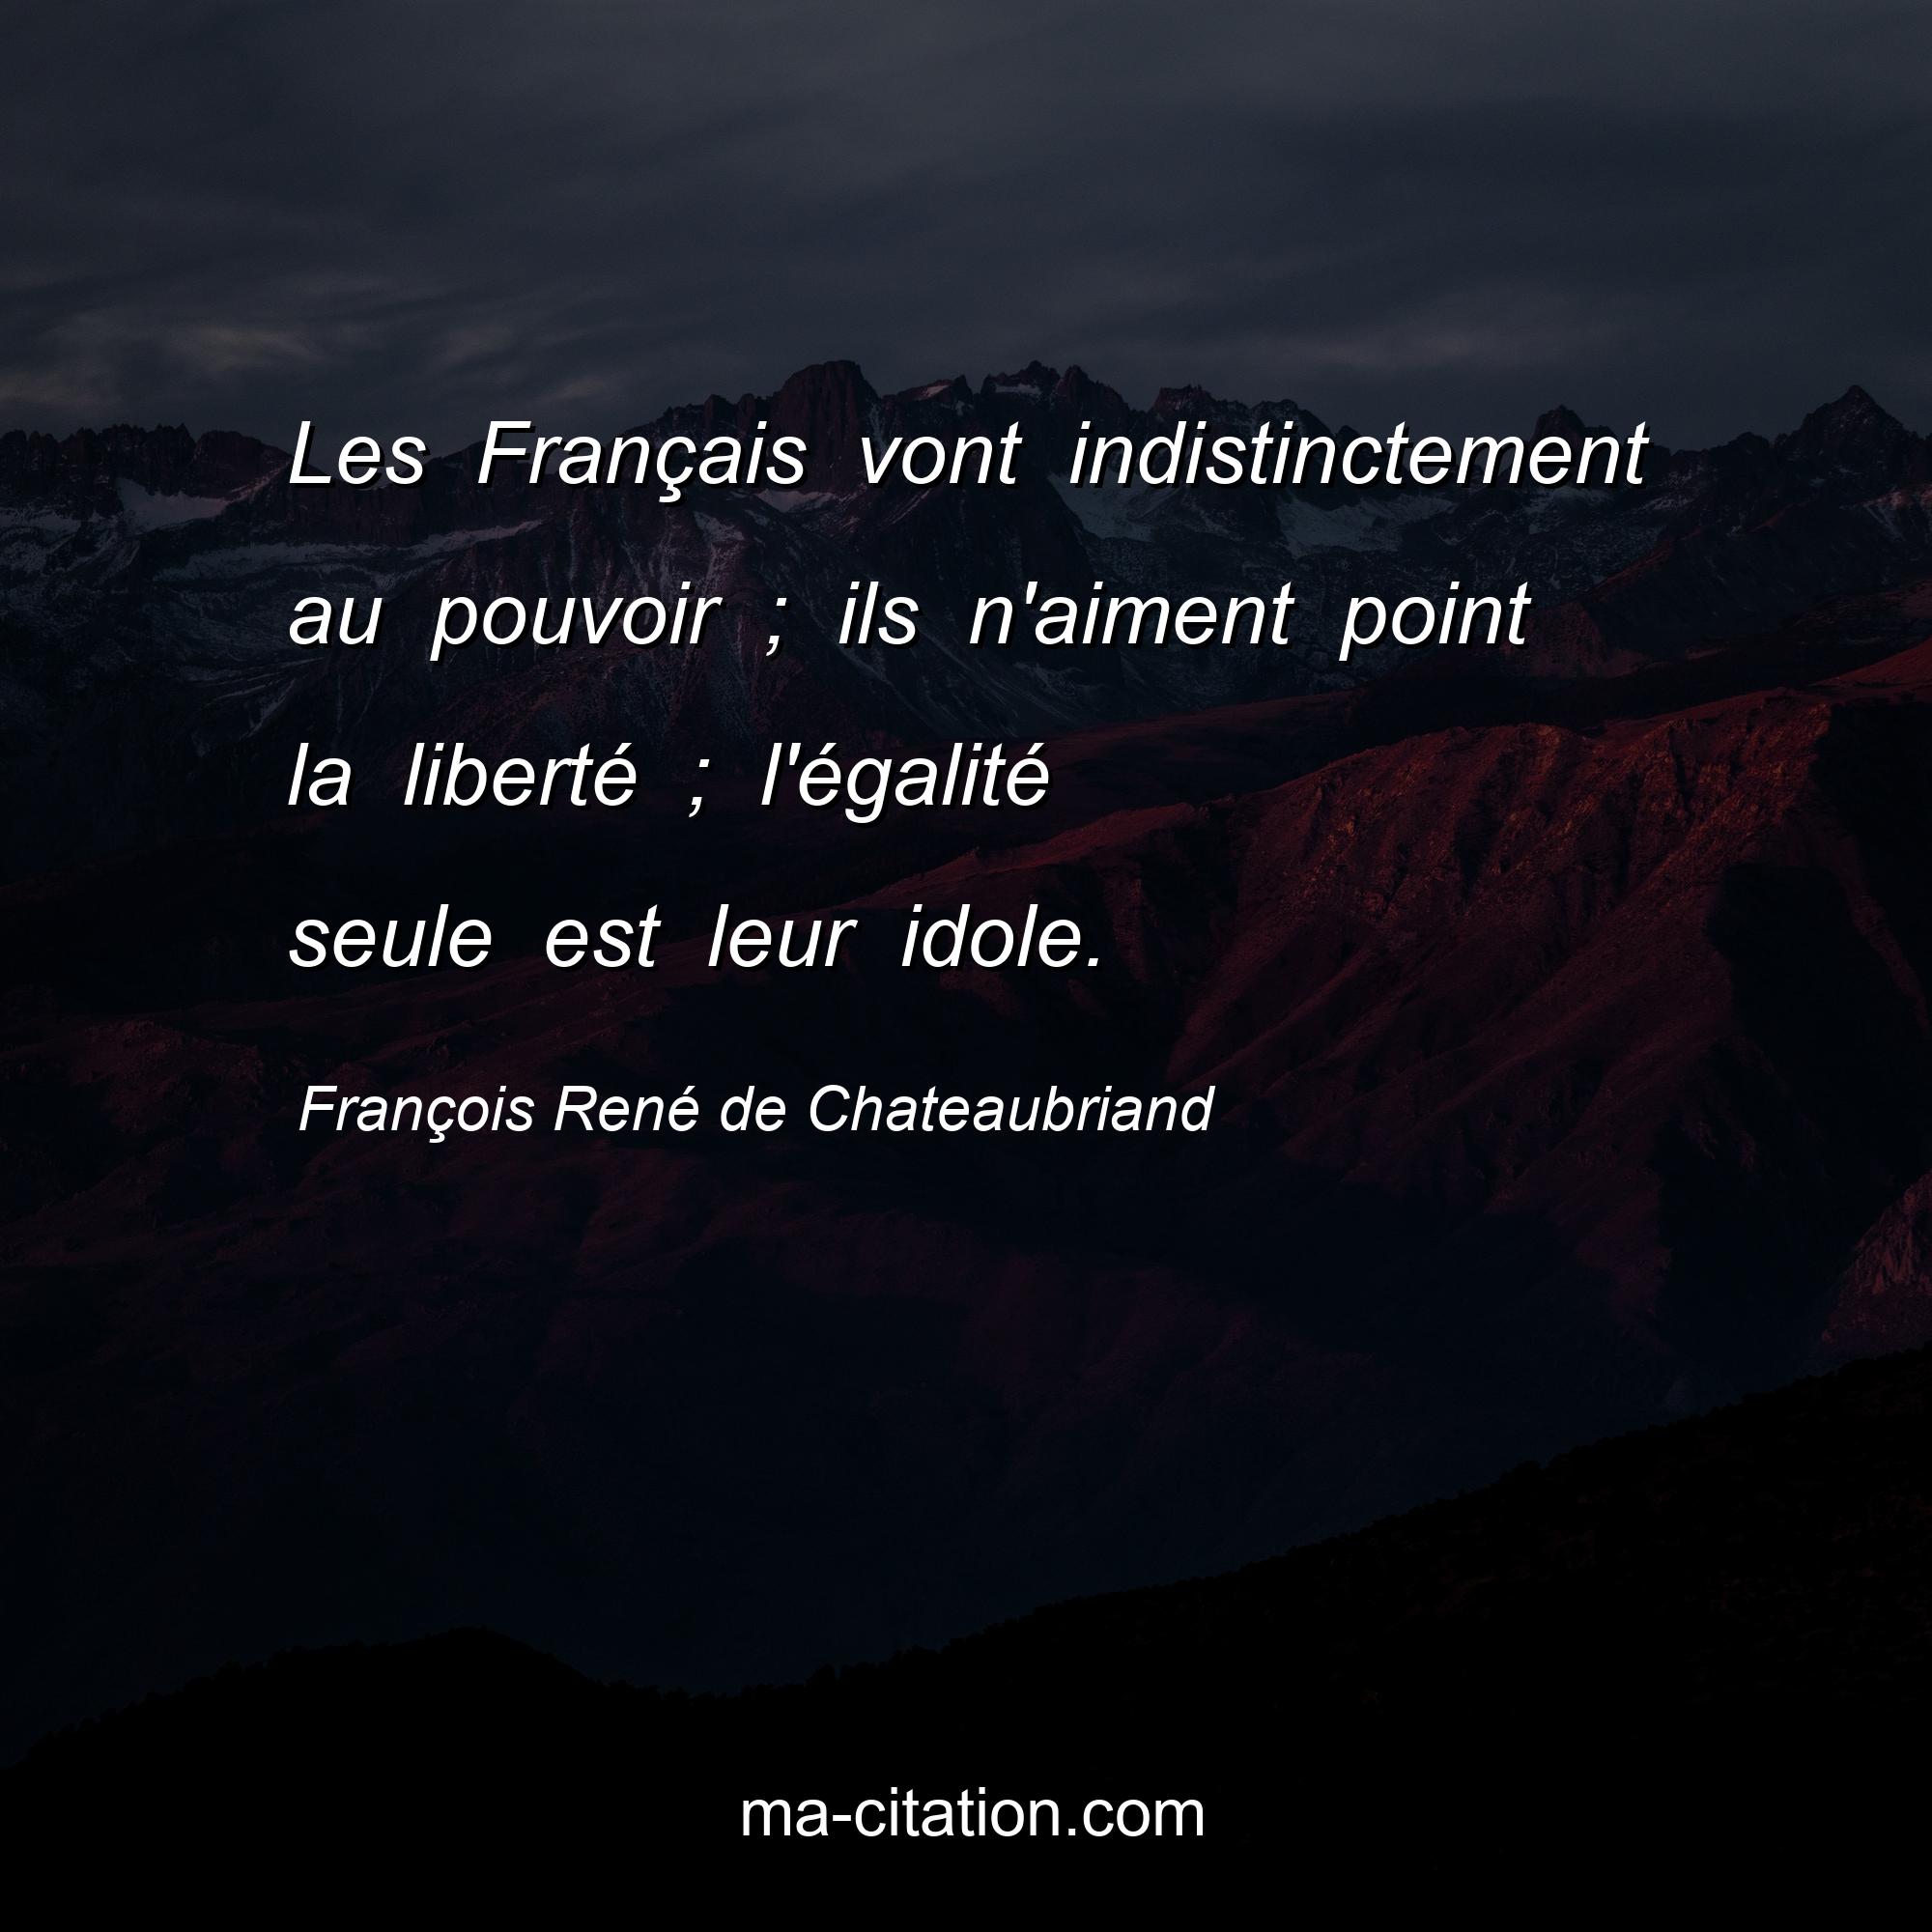 François René de Chateaubriand : Les Français vont indistinctement au pouvoir ; ils n'aiment point la liberté ; l'égalité seule est leur idole.